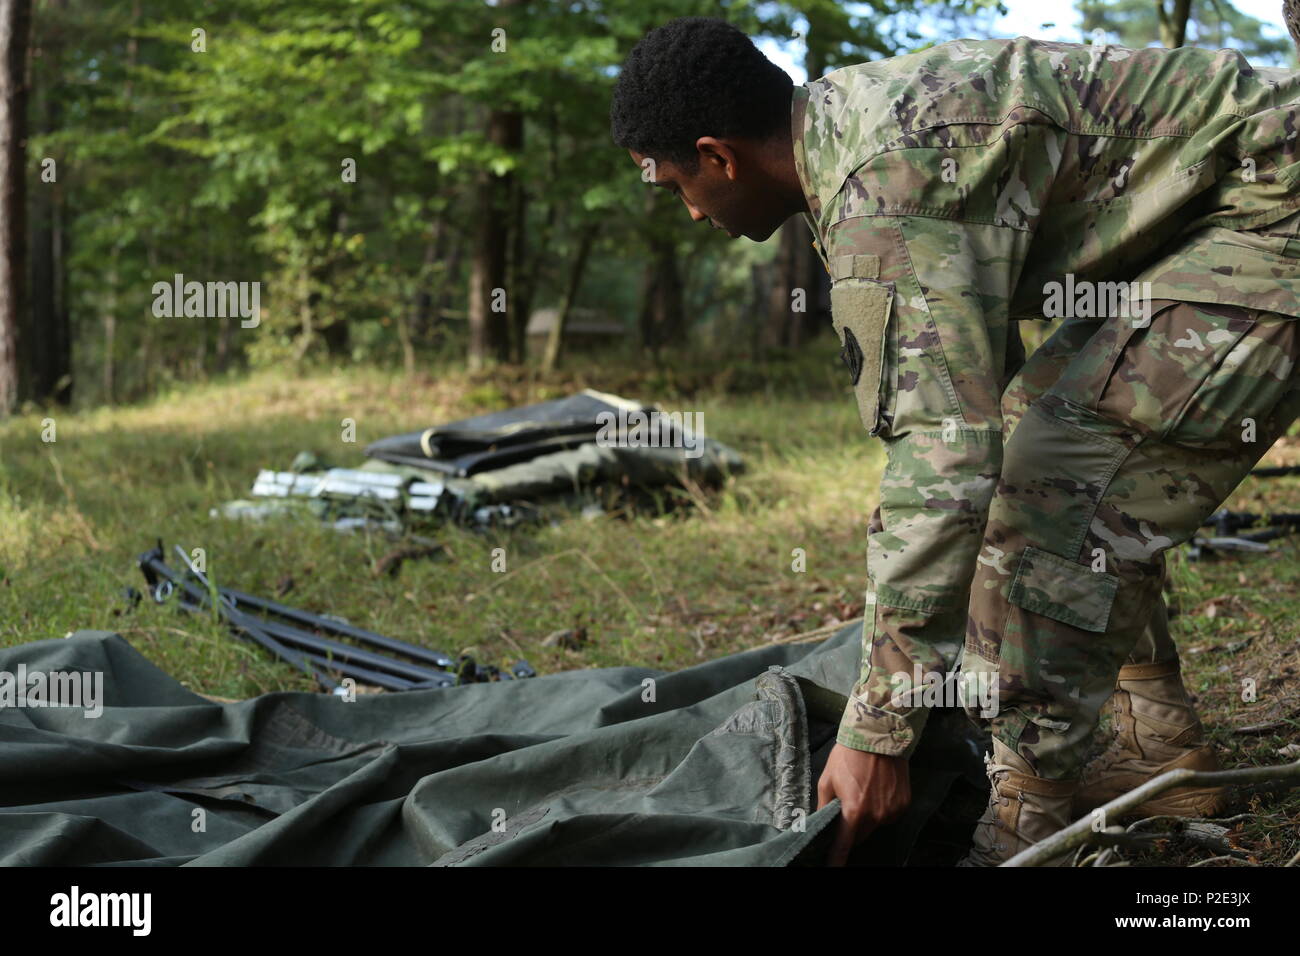 army tarp training